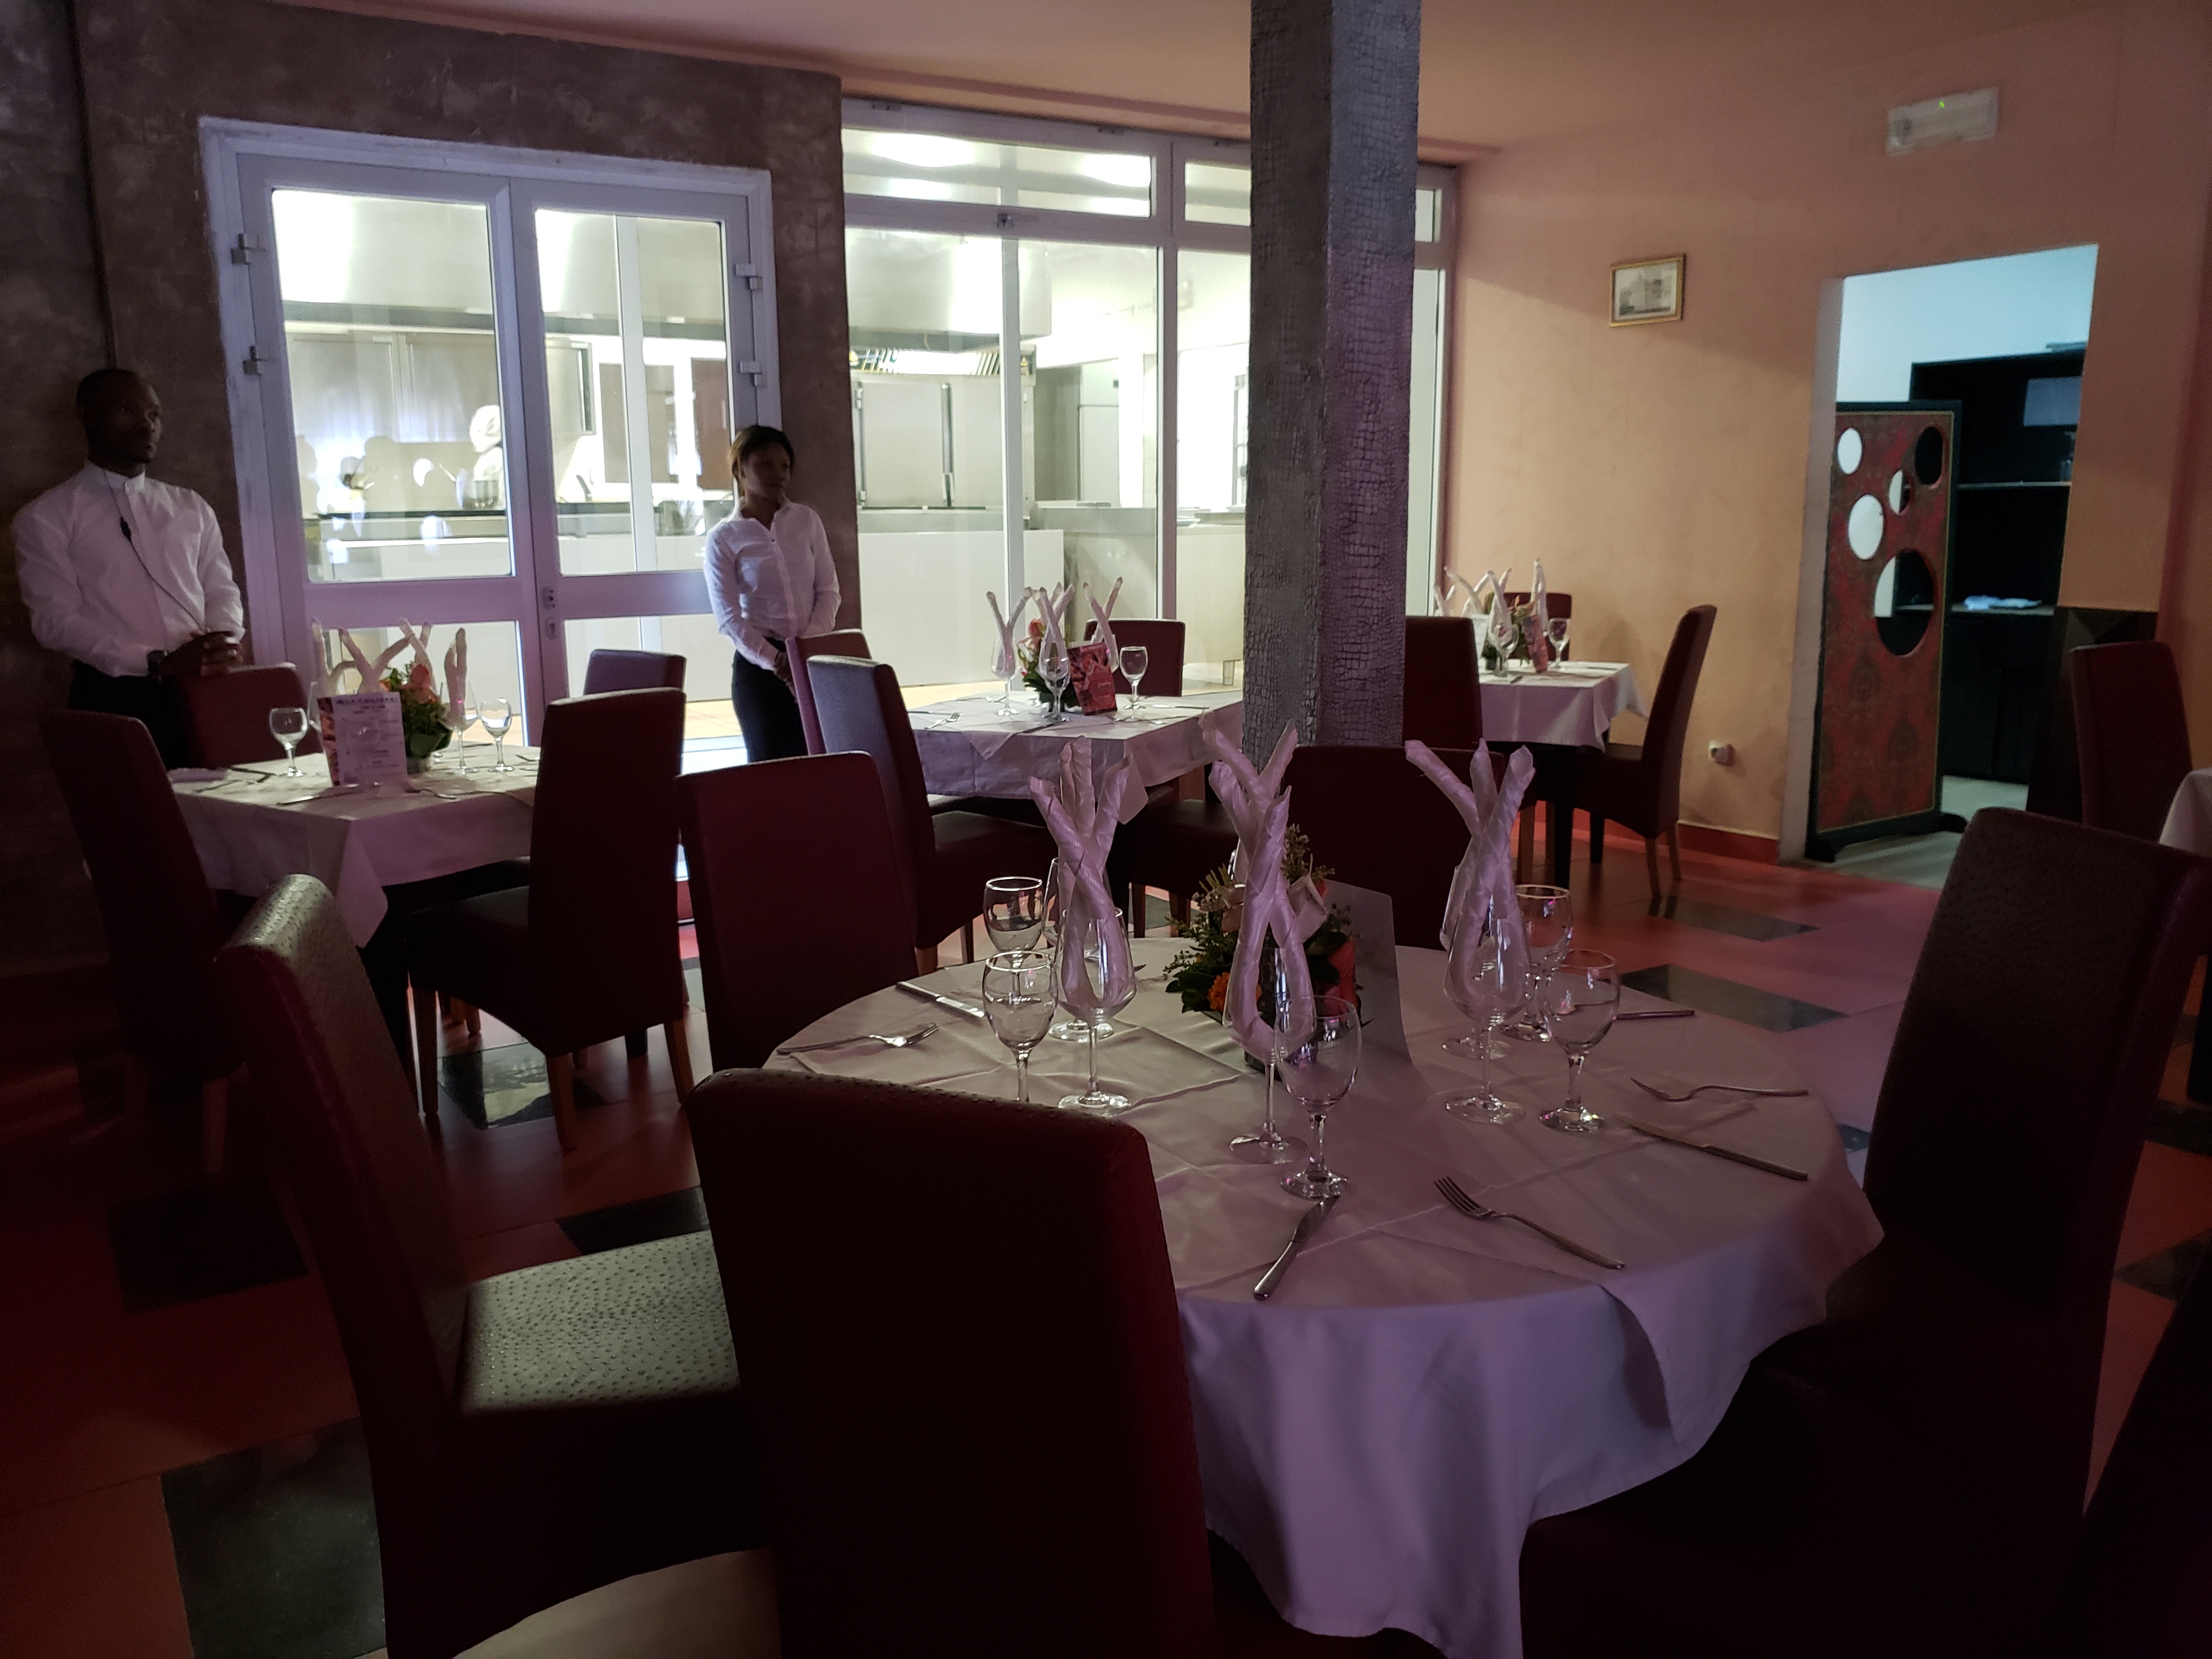 Les news de dn consulting : Le Restaurant Le Colisée, qualité de service avérée